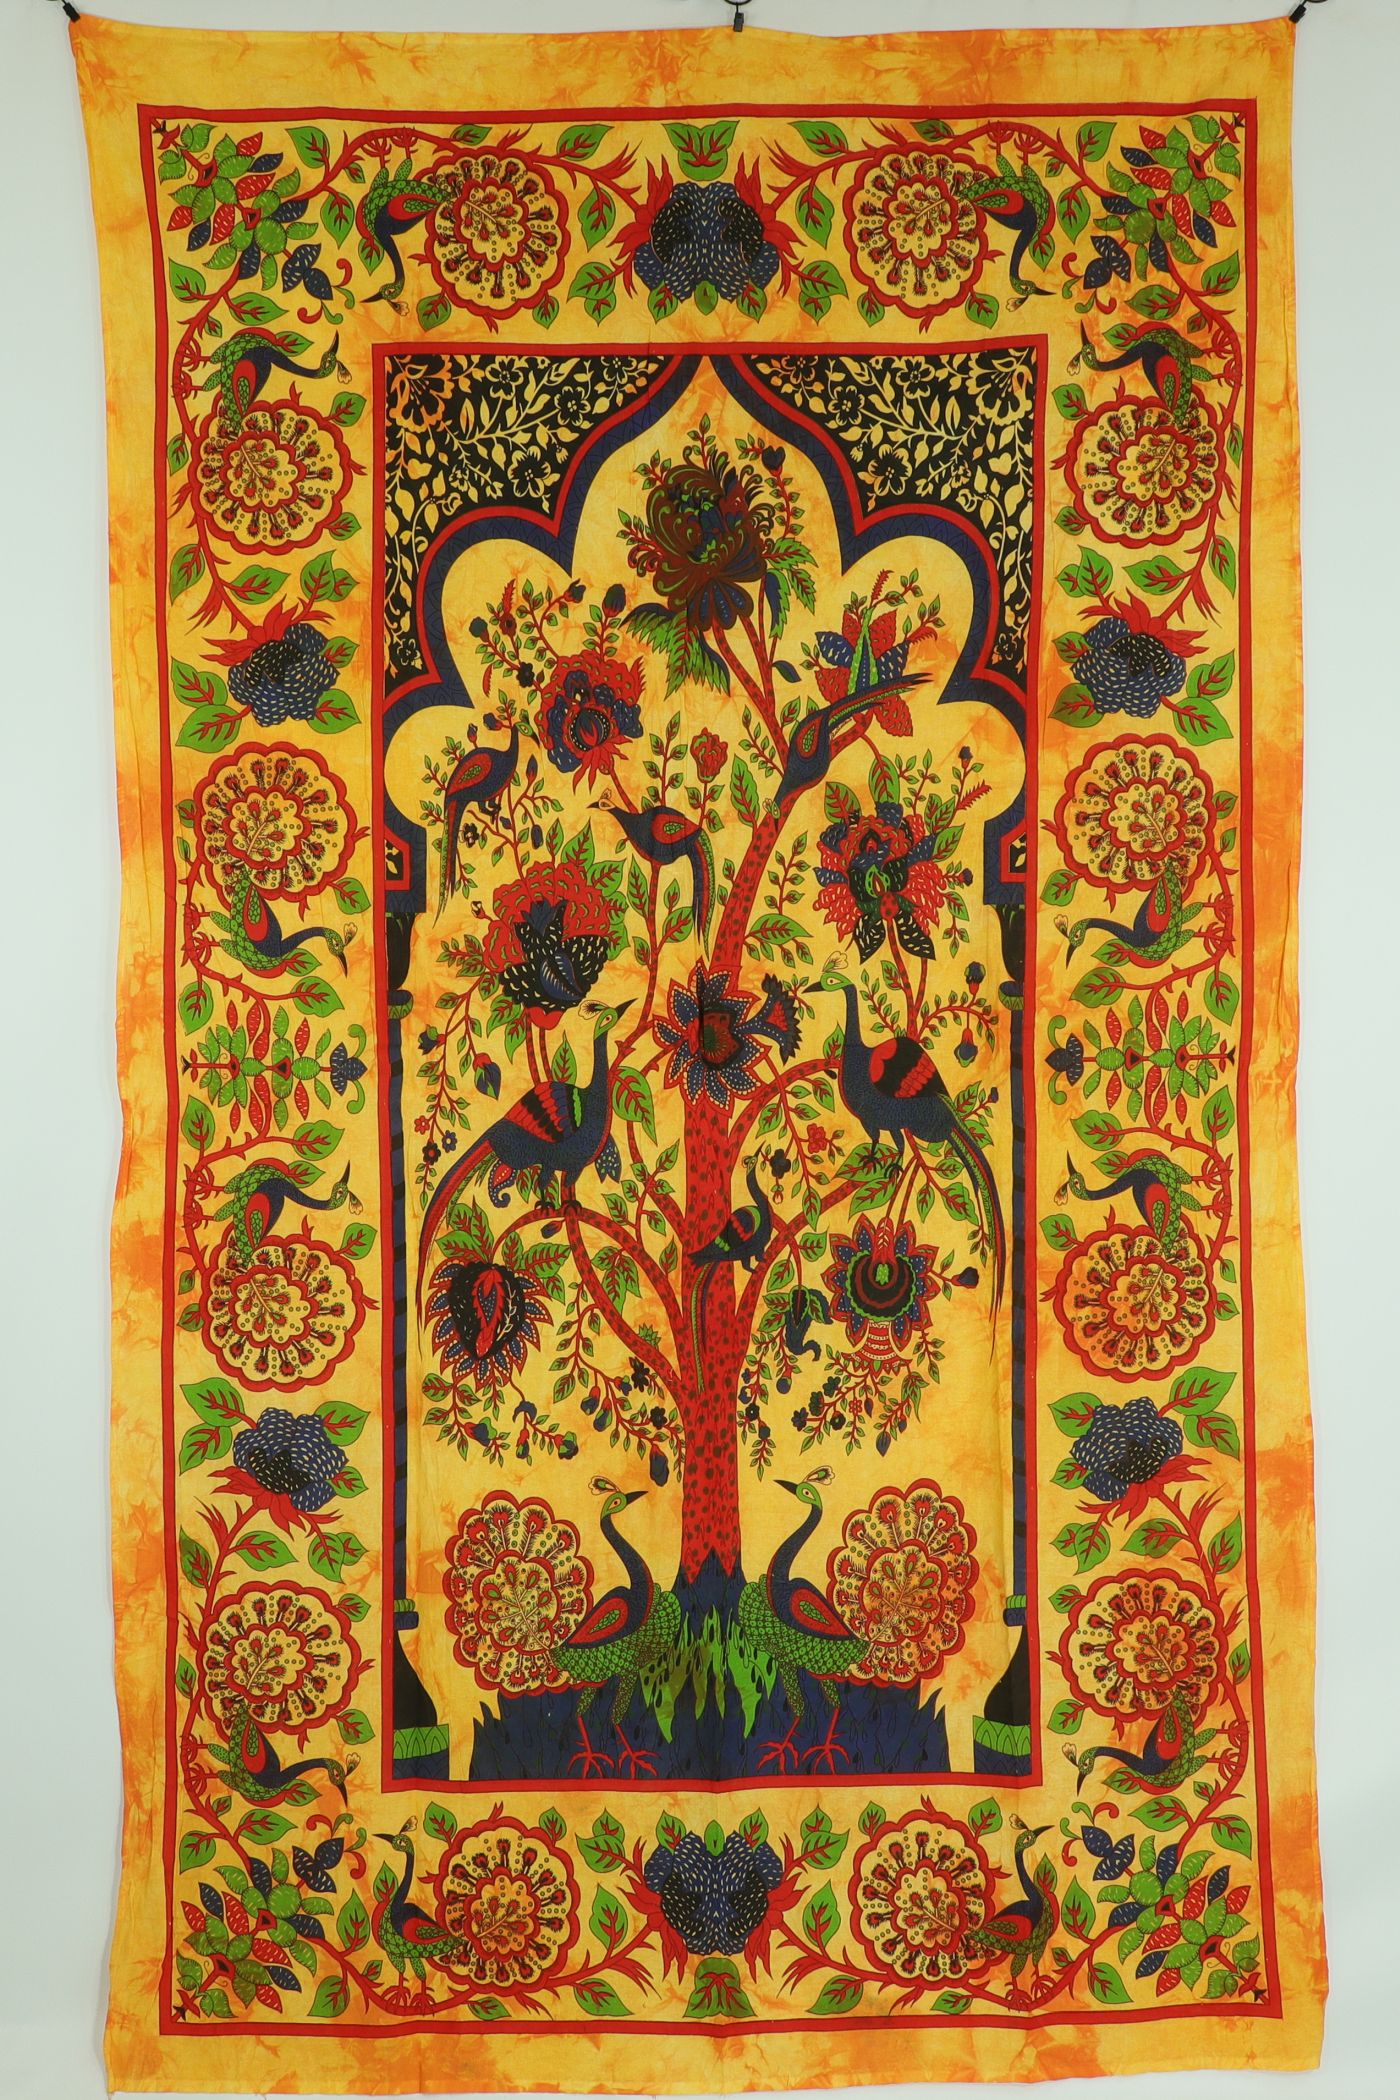 Wandtuch XL 130x210 - Tierreich - Baum mit Tieren - 100% Baumwolle - detailreicher indischer Druck - zweifarbig - Batik - dekoratives Tuch, Wandbild, Tagesdecke, Bedcover, Vorhang, Picknick-Decke, Strandtuch